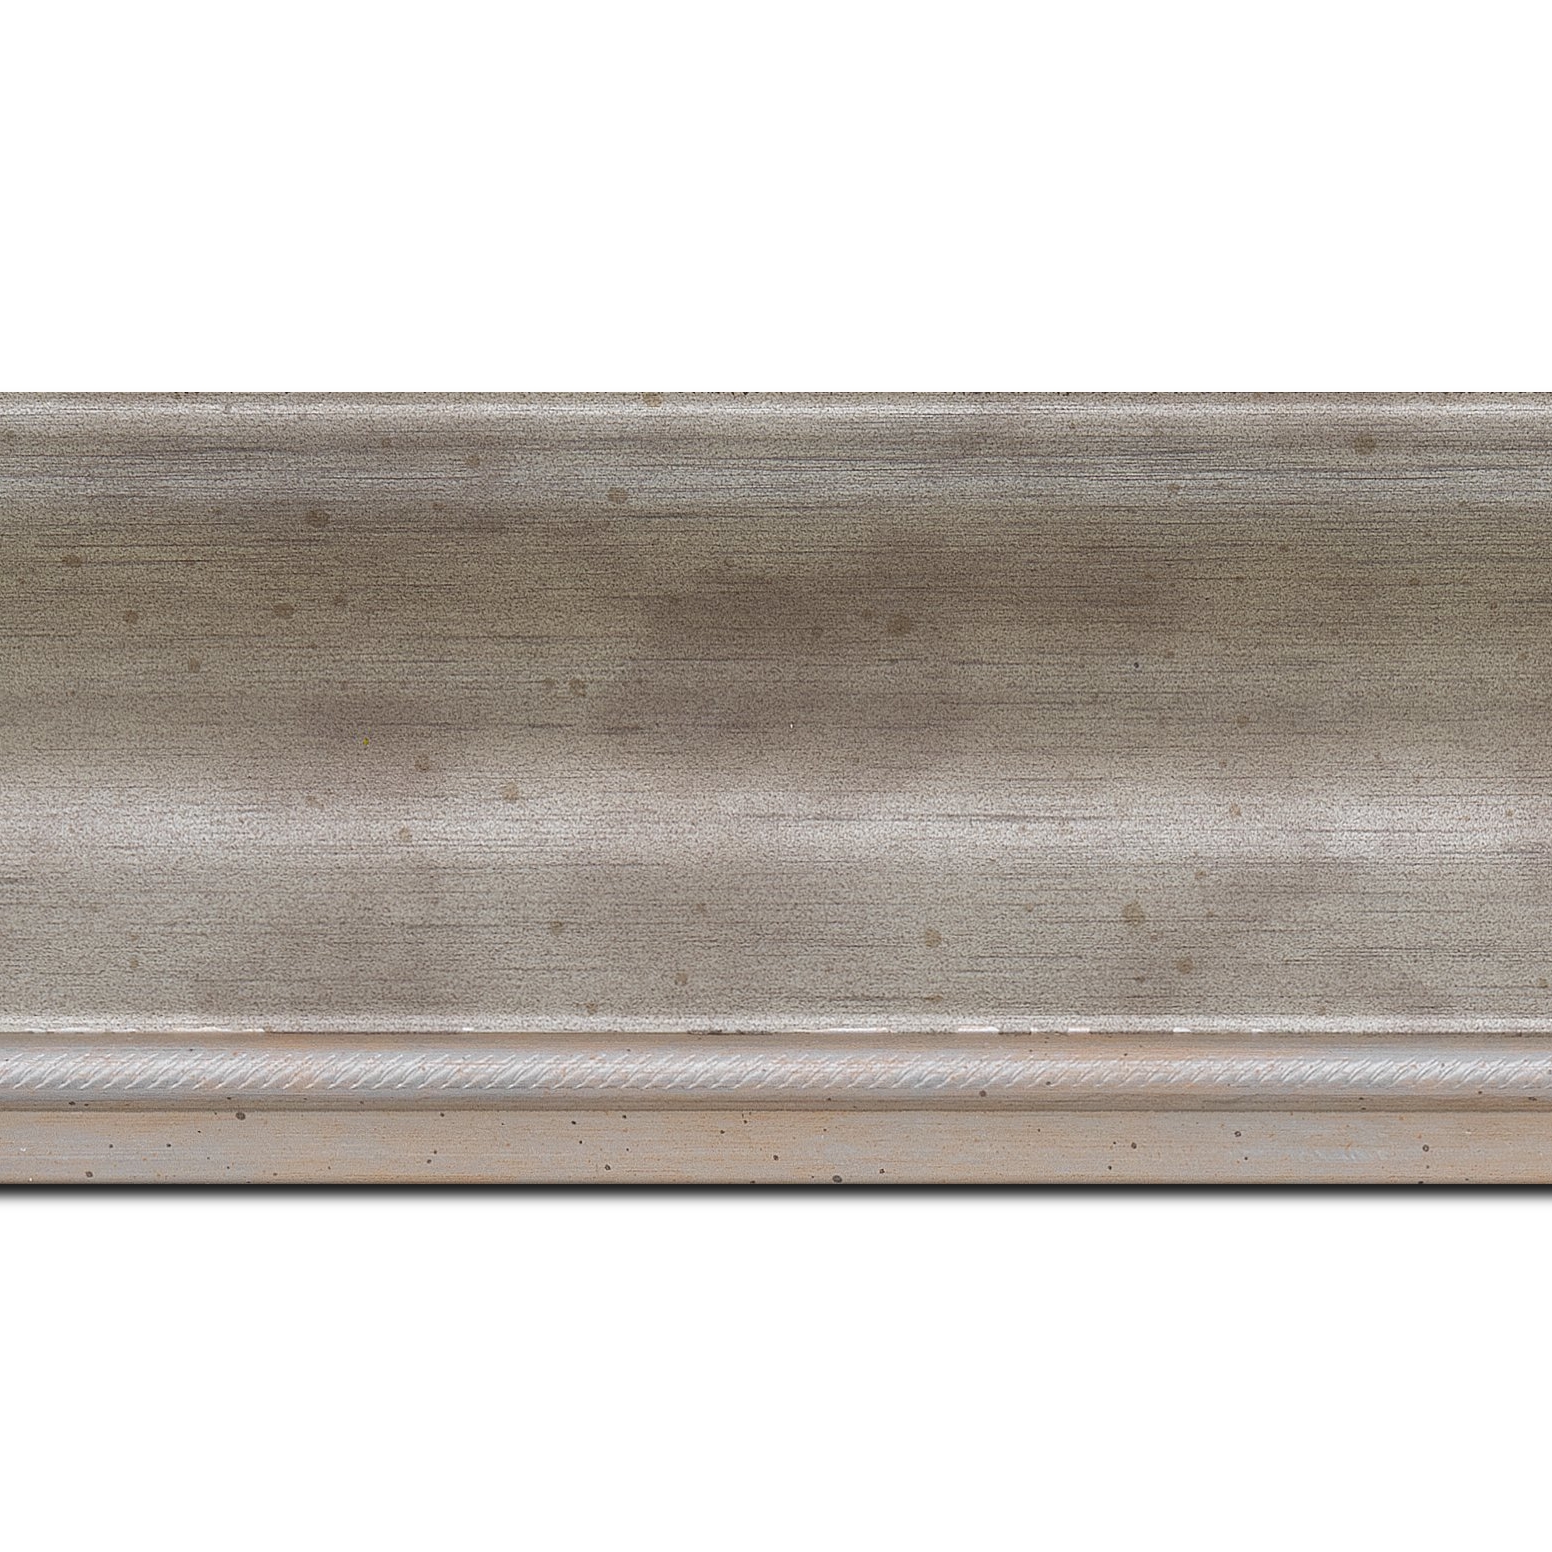 Baguette longueur 1.40m bois profil incurvé largeur 7.5cm de couleur argent finition antique filet argent vermeille